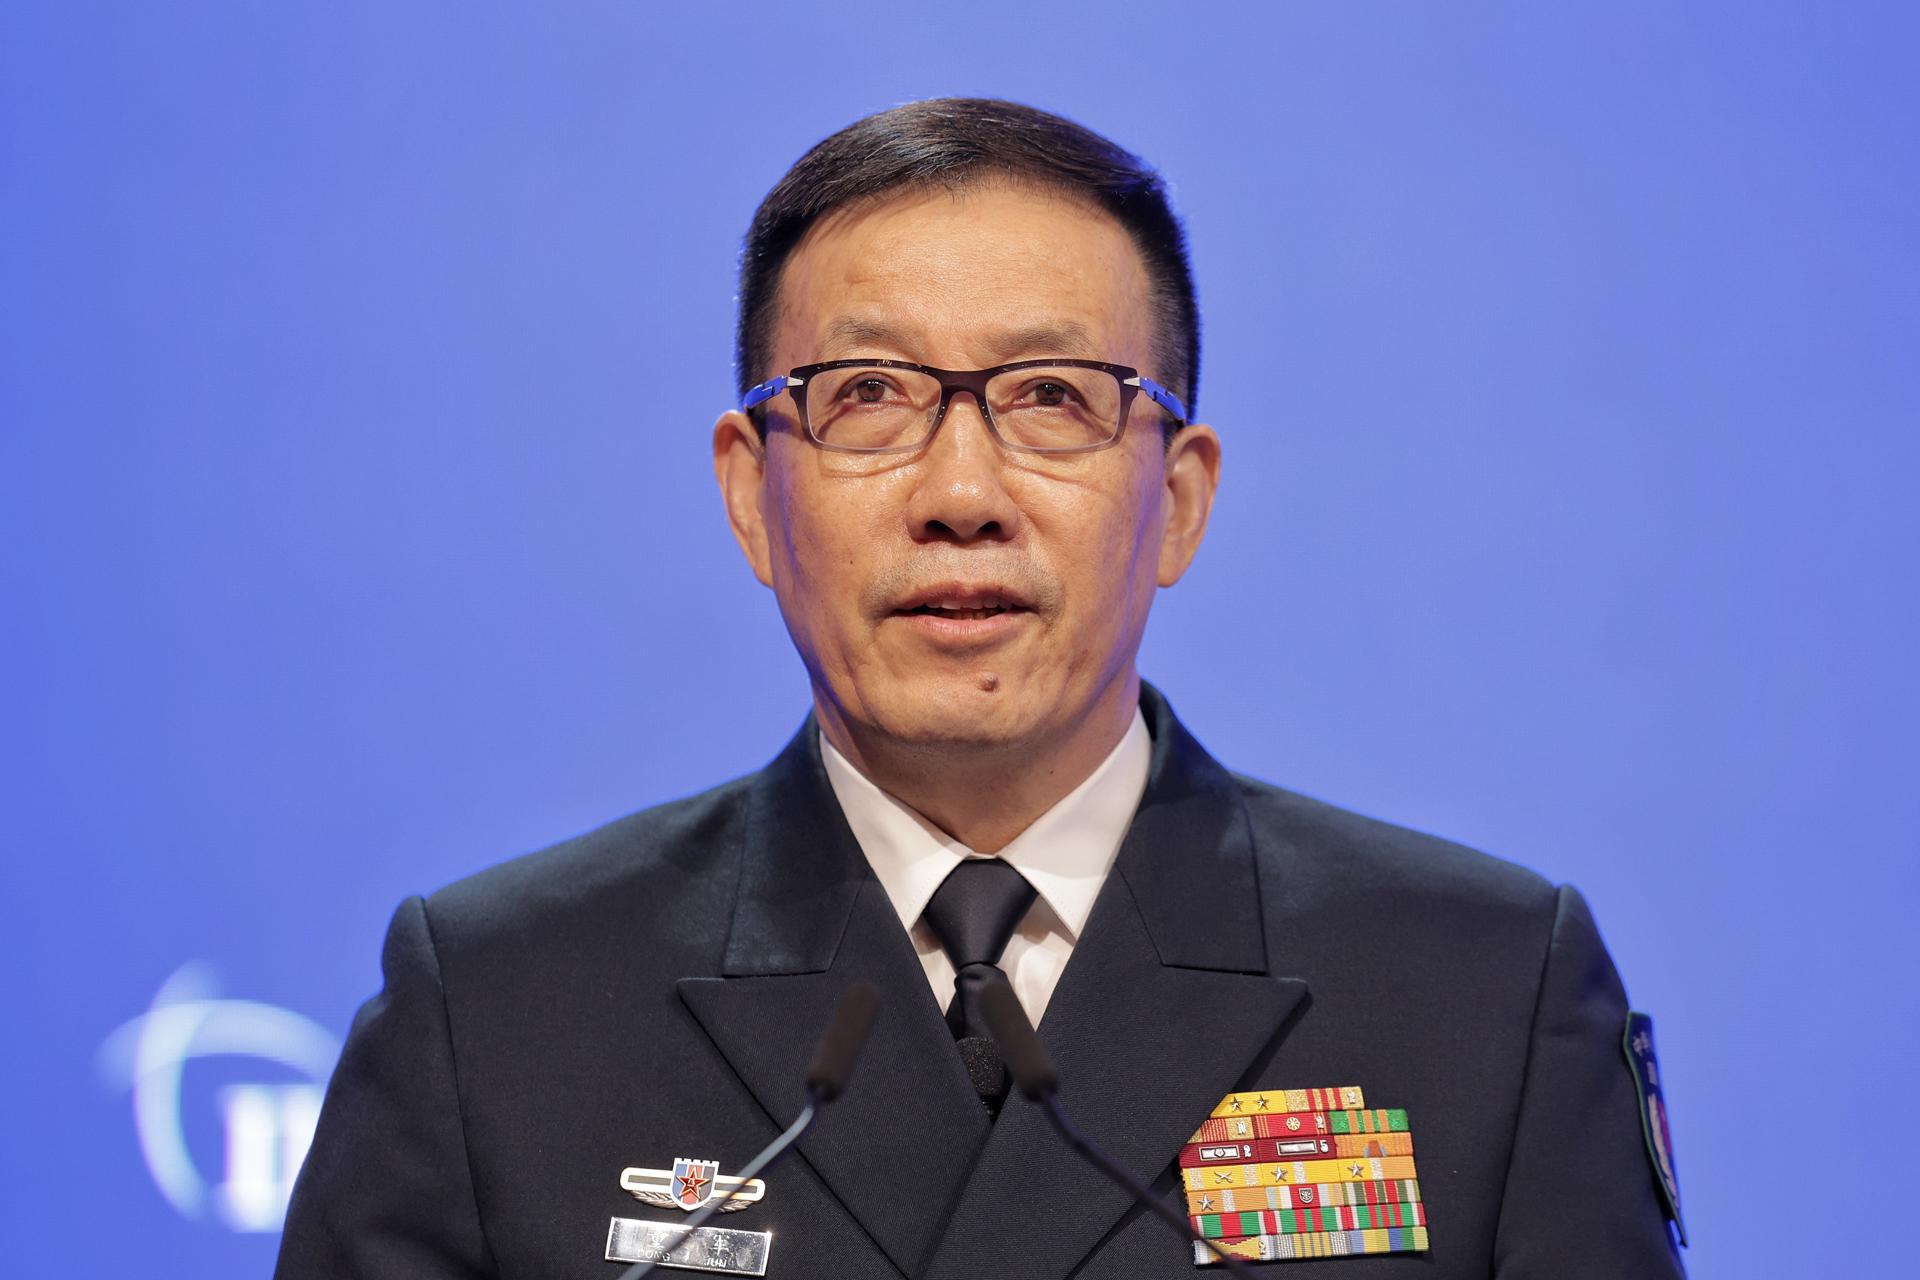 El Ministro de Defensa Nacional de China, el Almirante Dong Jun, pronuncia su discurso durante una sesión plenaria del 21º Diálogo Shangri-la del Instituto Internacional de Estudios Estratégicos (IISS) en Singapur, el 02 de junio de 2024. EFE/EPA/KEVIN LIM/